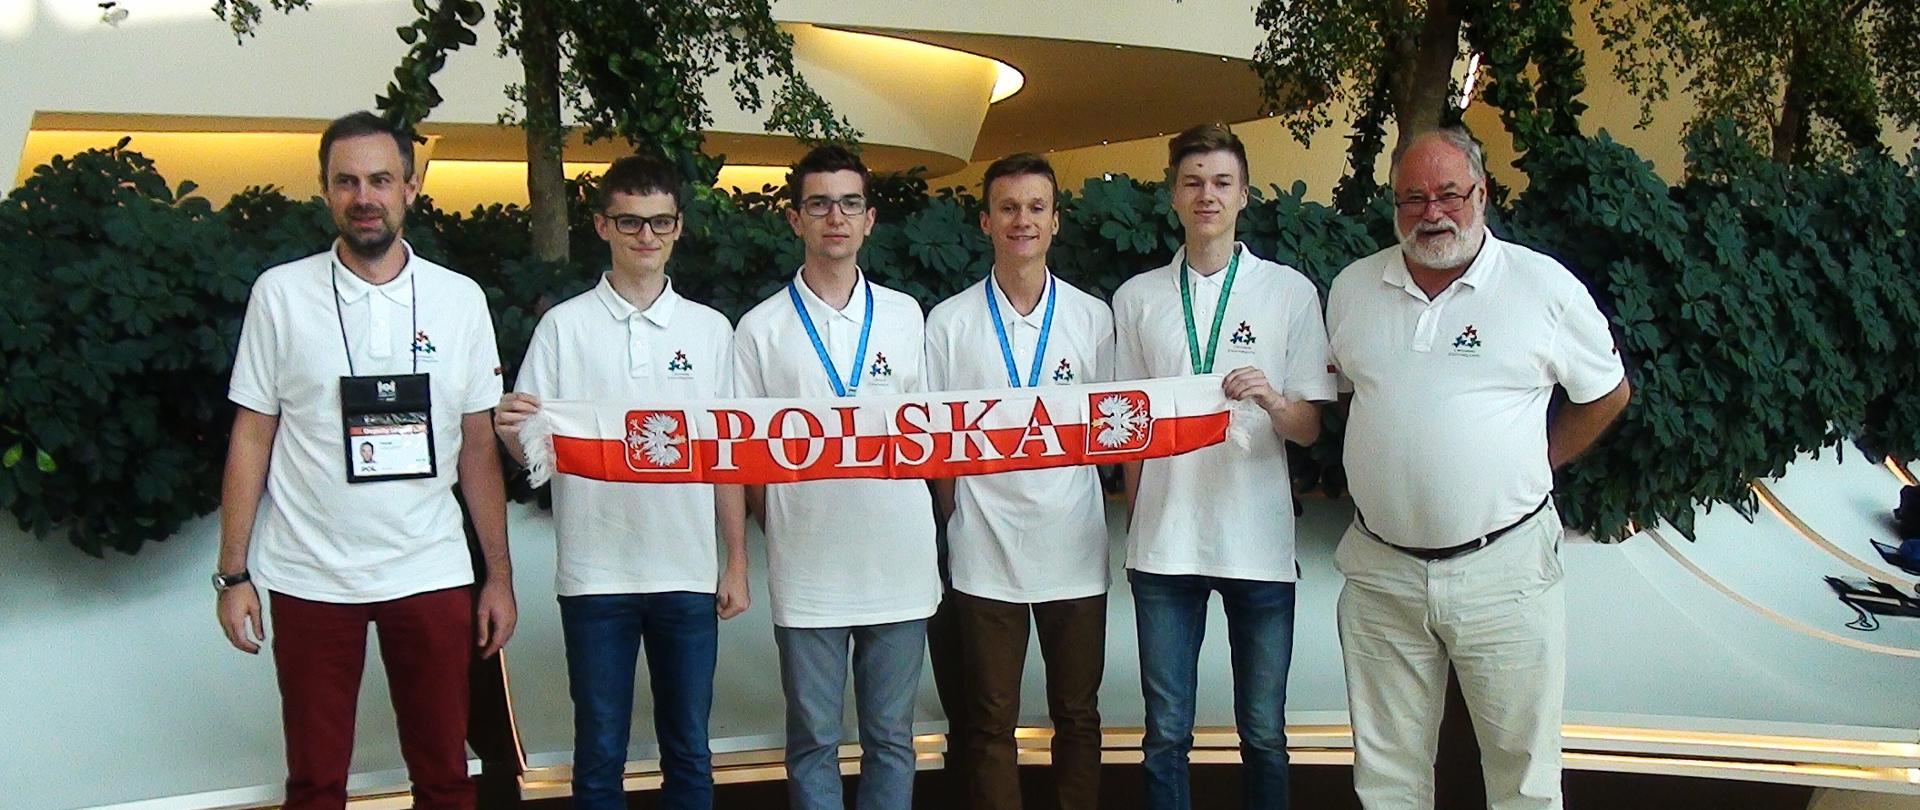 Polscy uczniowie z medalami Międzynarodowej Olimpiady Informatycznej 